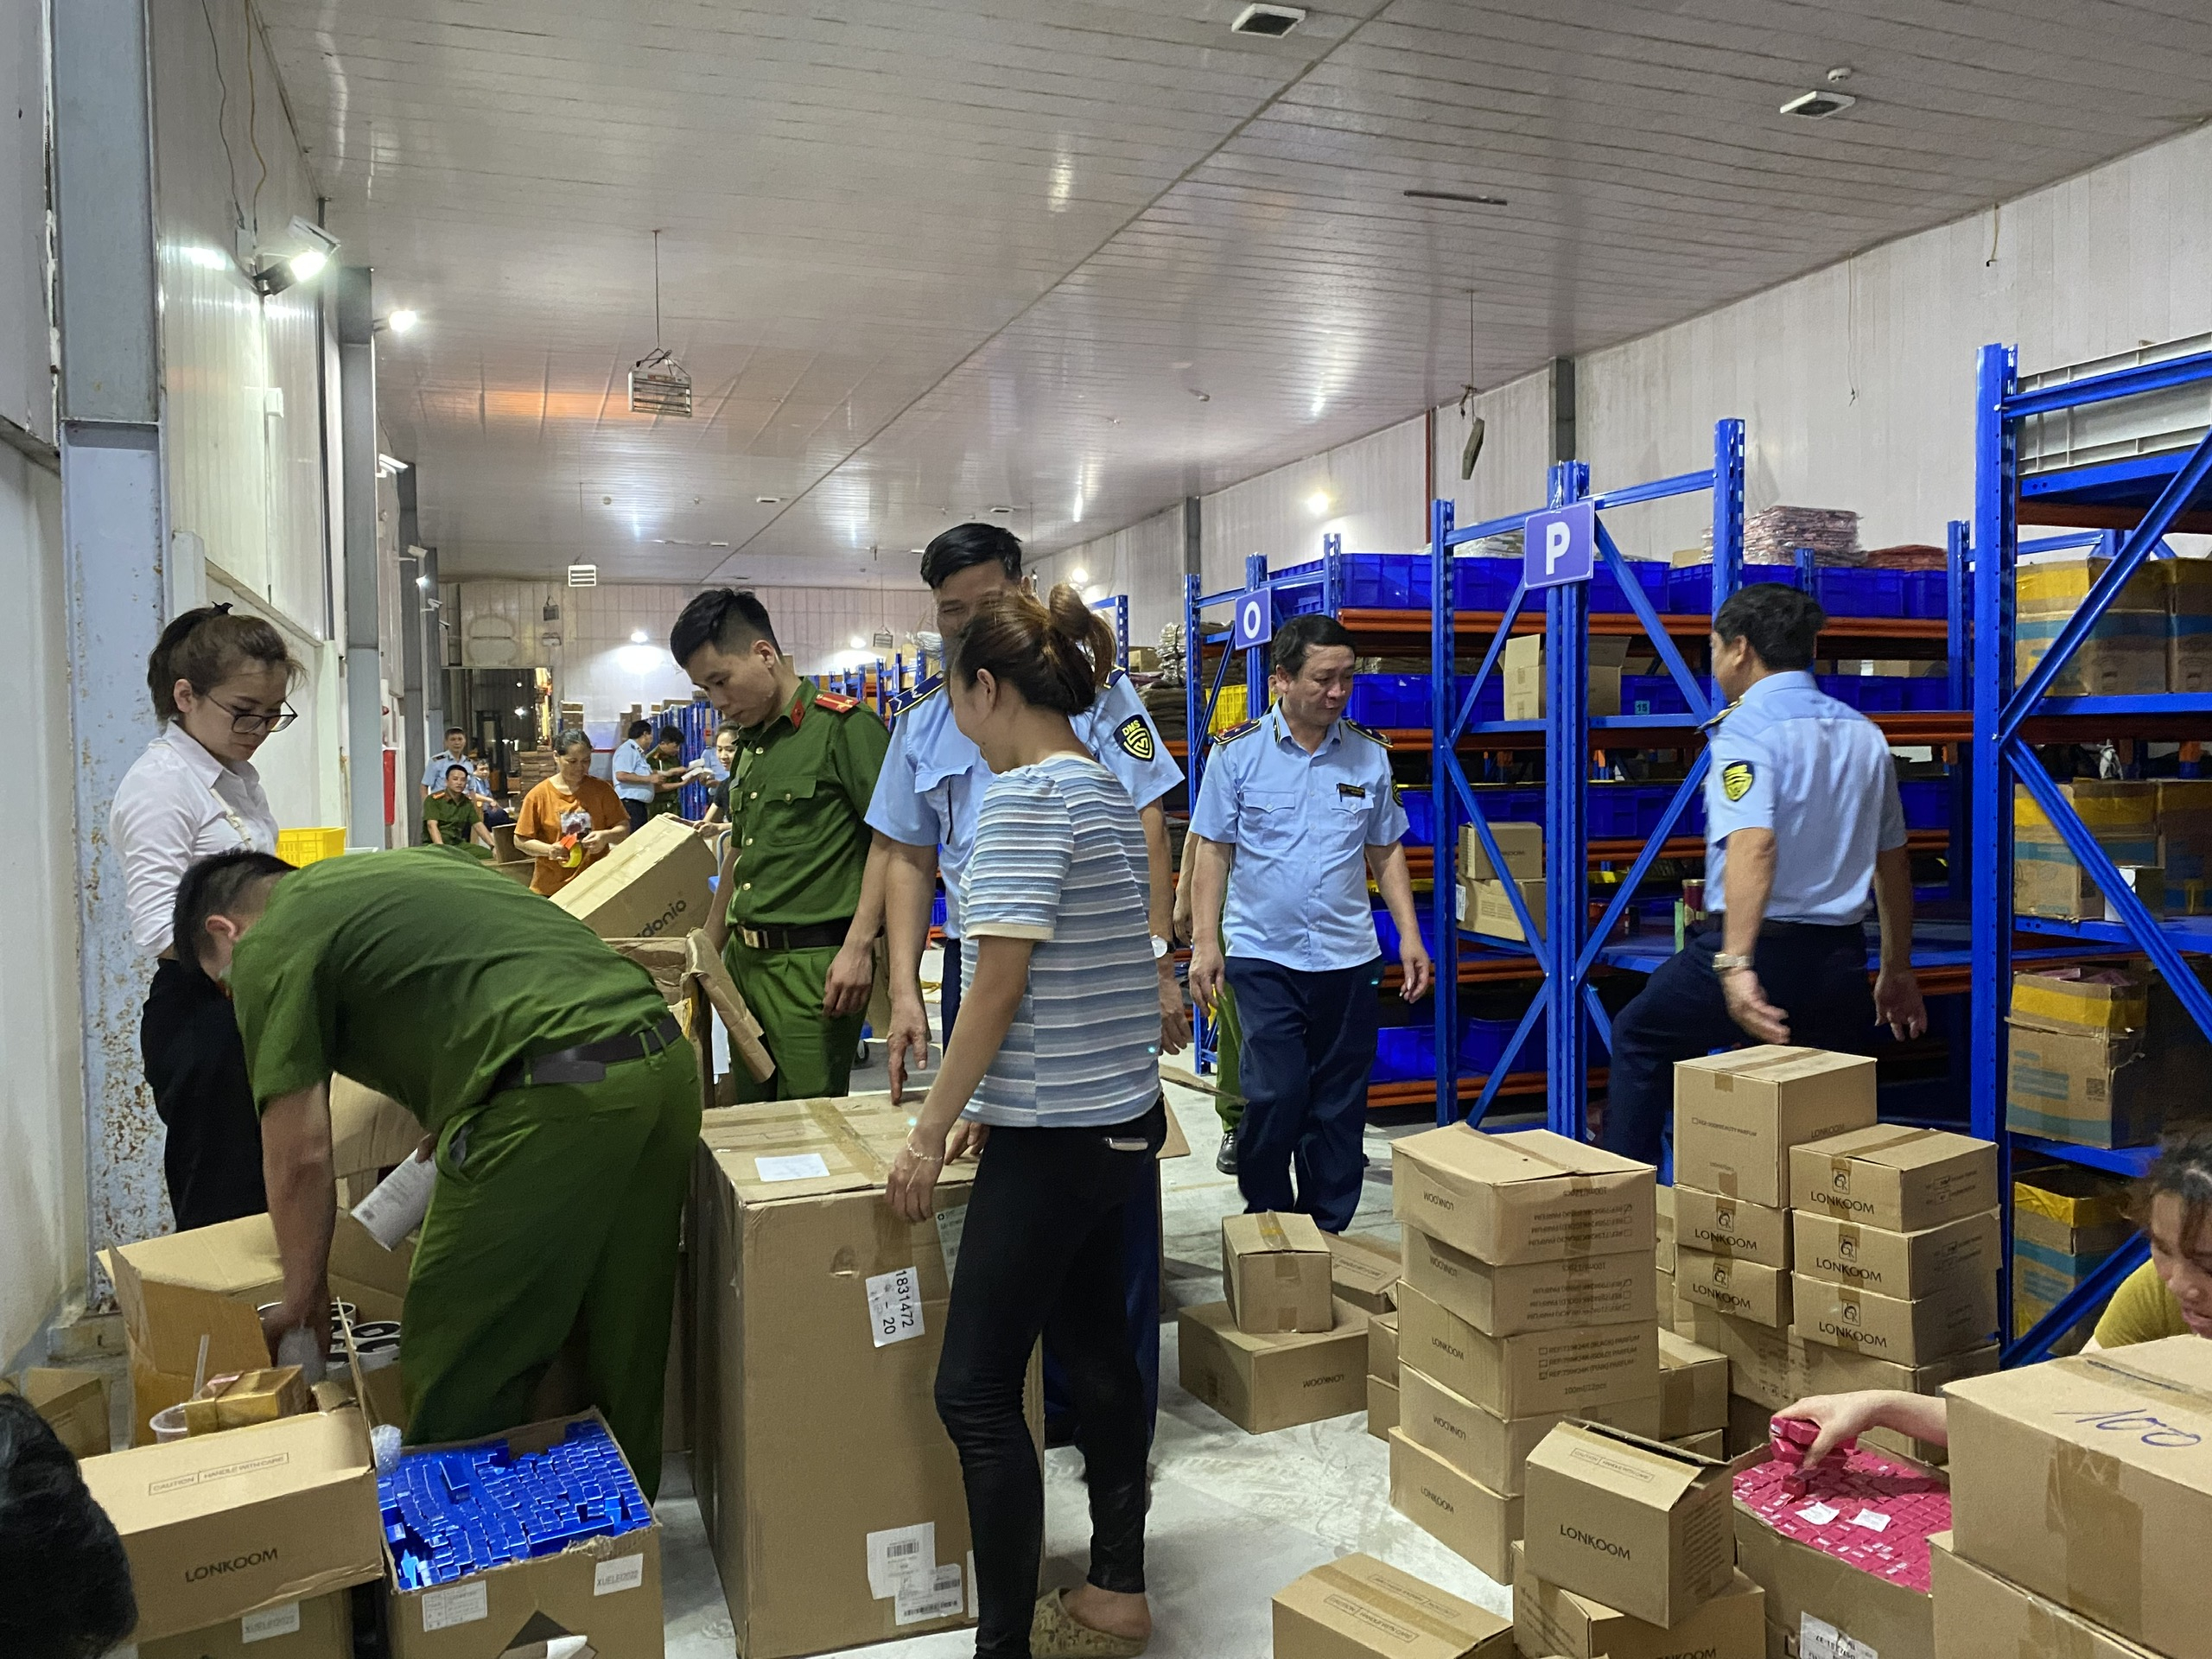 Bắc Ninh: Phát hiện kho hàng chứa gần 23.000 sản phẩm có dấu hiệu nhập lậu